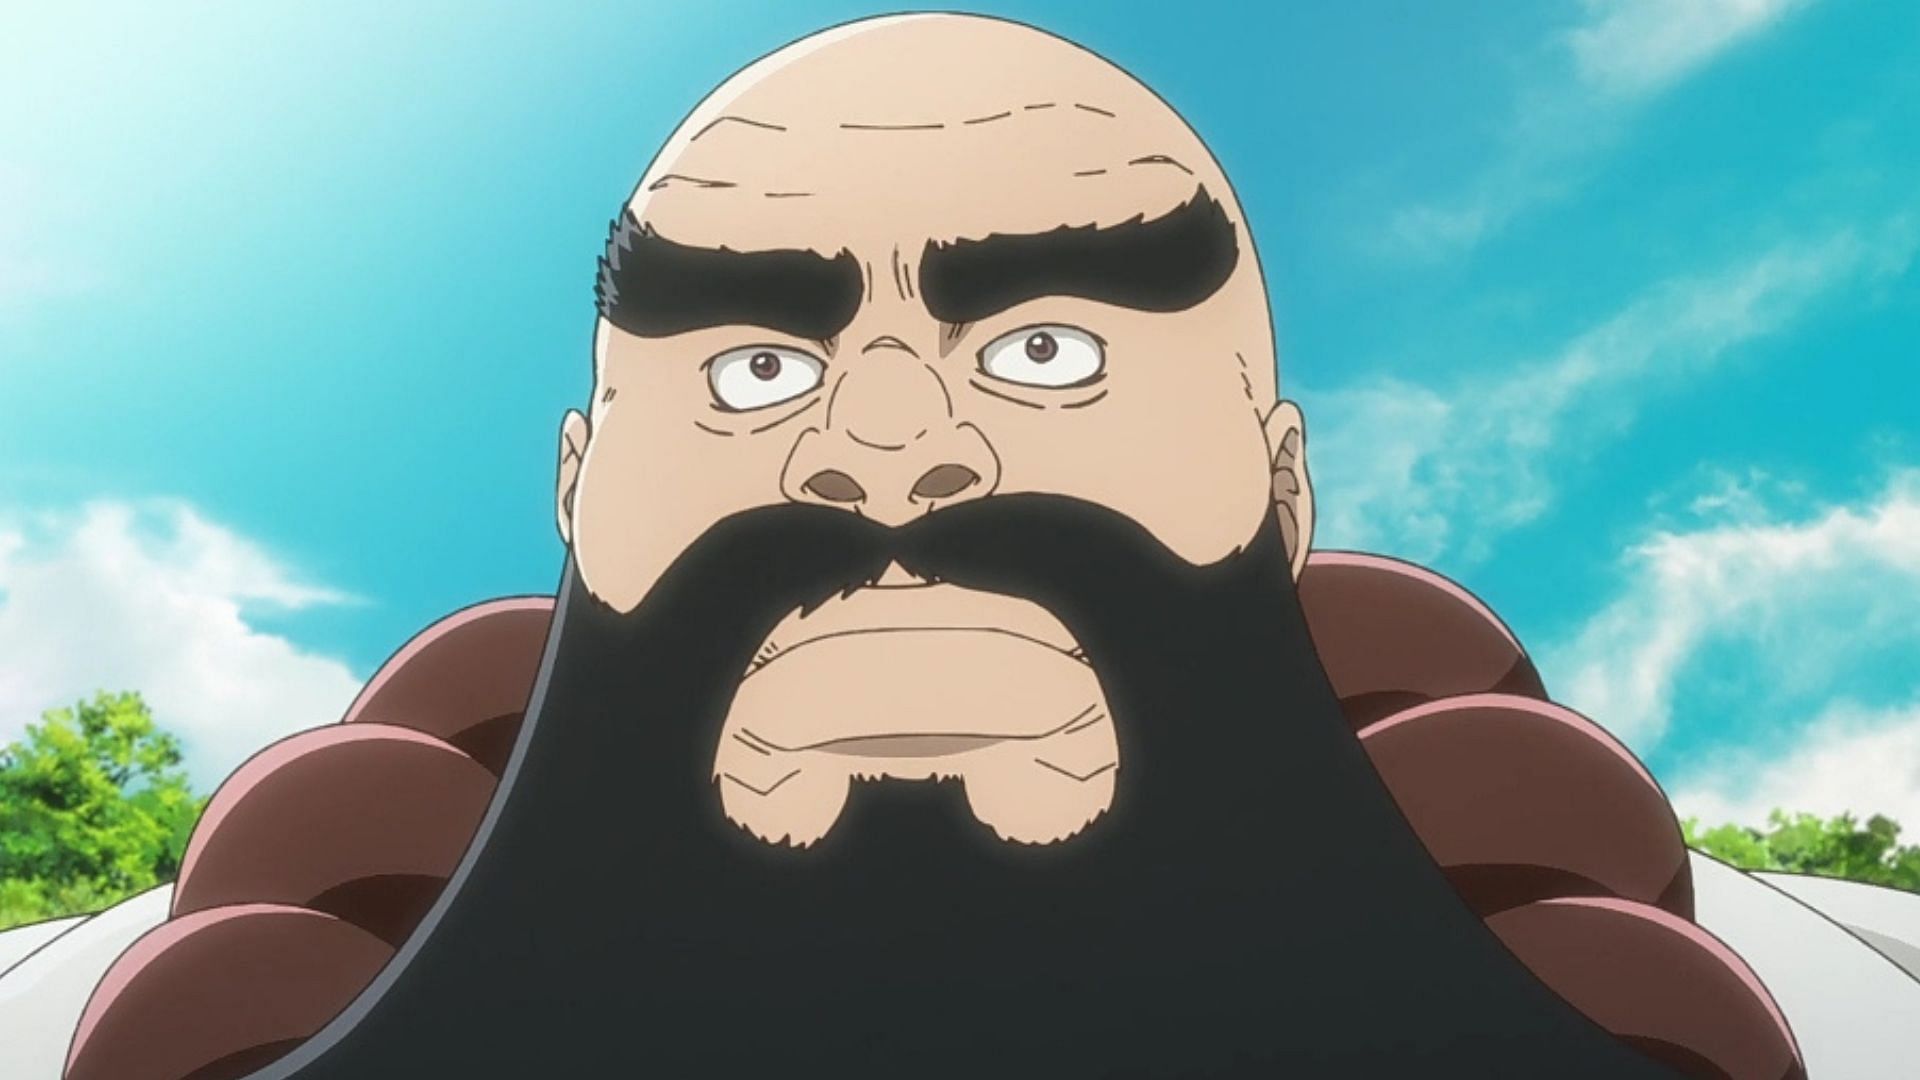 Ichibei as seen in the anime (Image via Studio Pierrot)